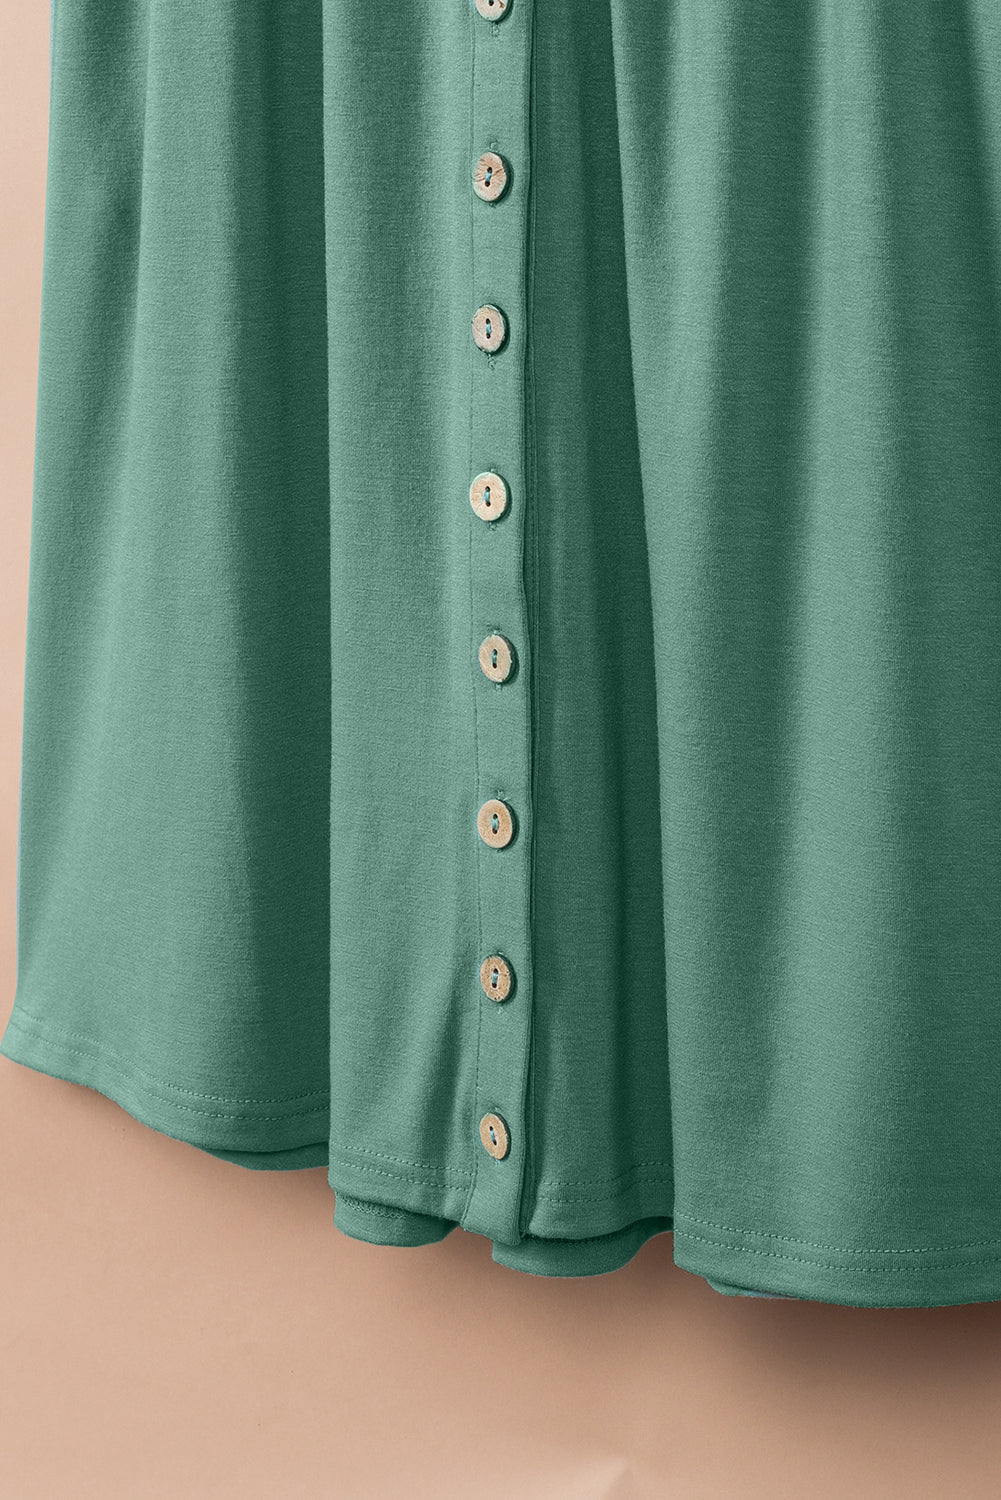 Ärmelloses Minikleid mit hoher Taille und grünen Knöpfen